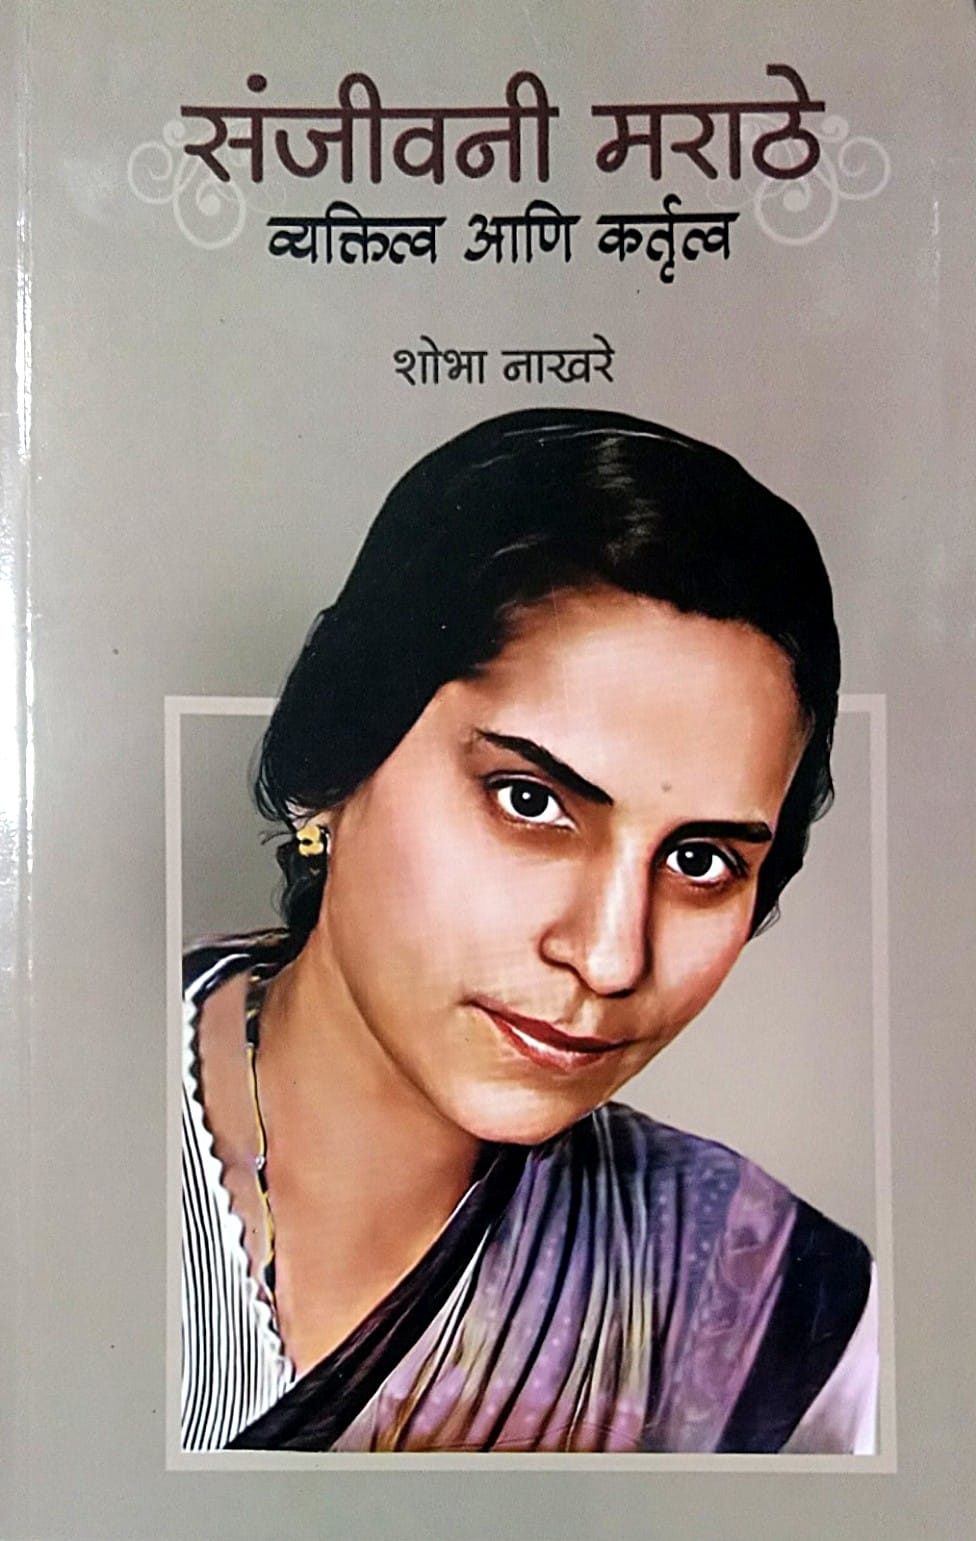 Sanjivani Marathe Vyaktitva Ani Kartutv by Nakhare Shobha